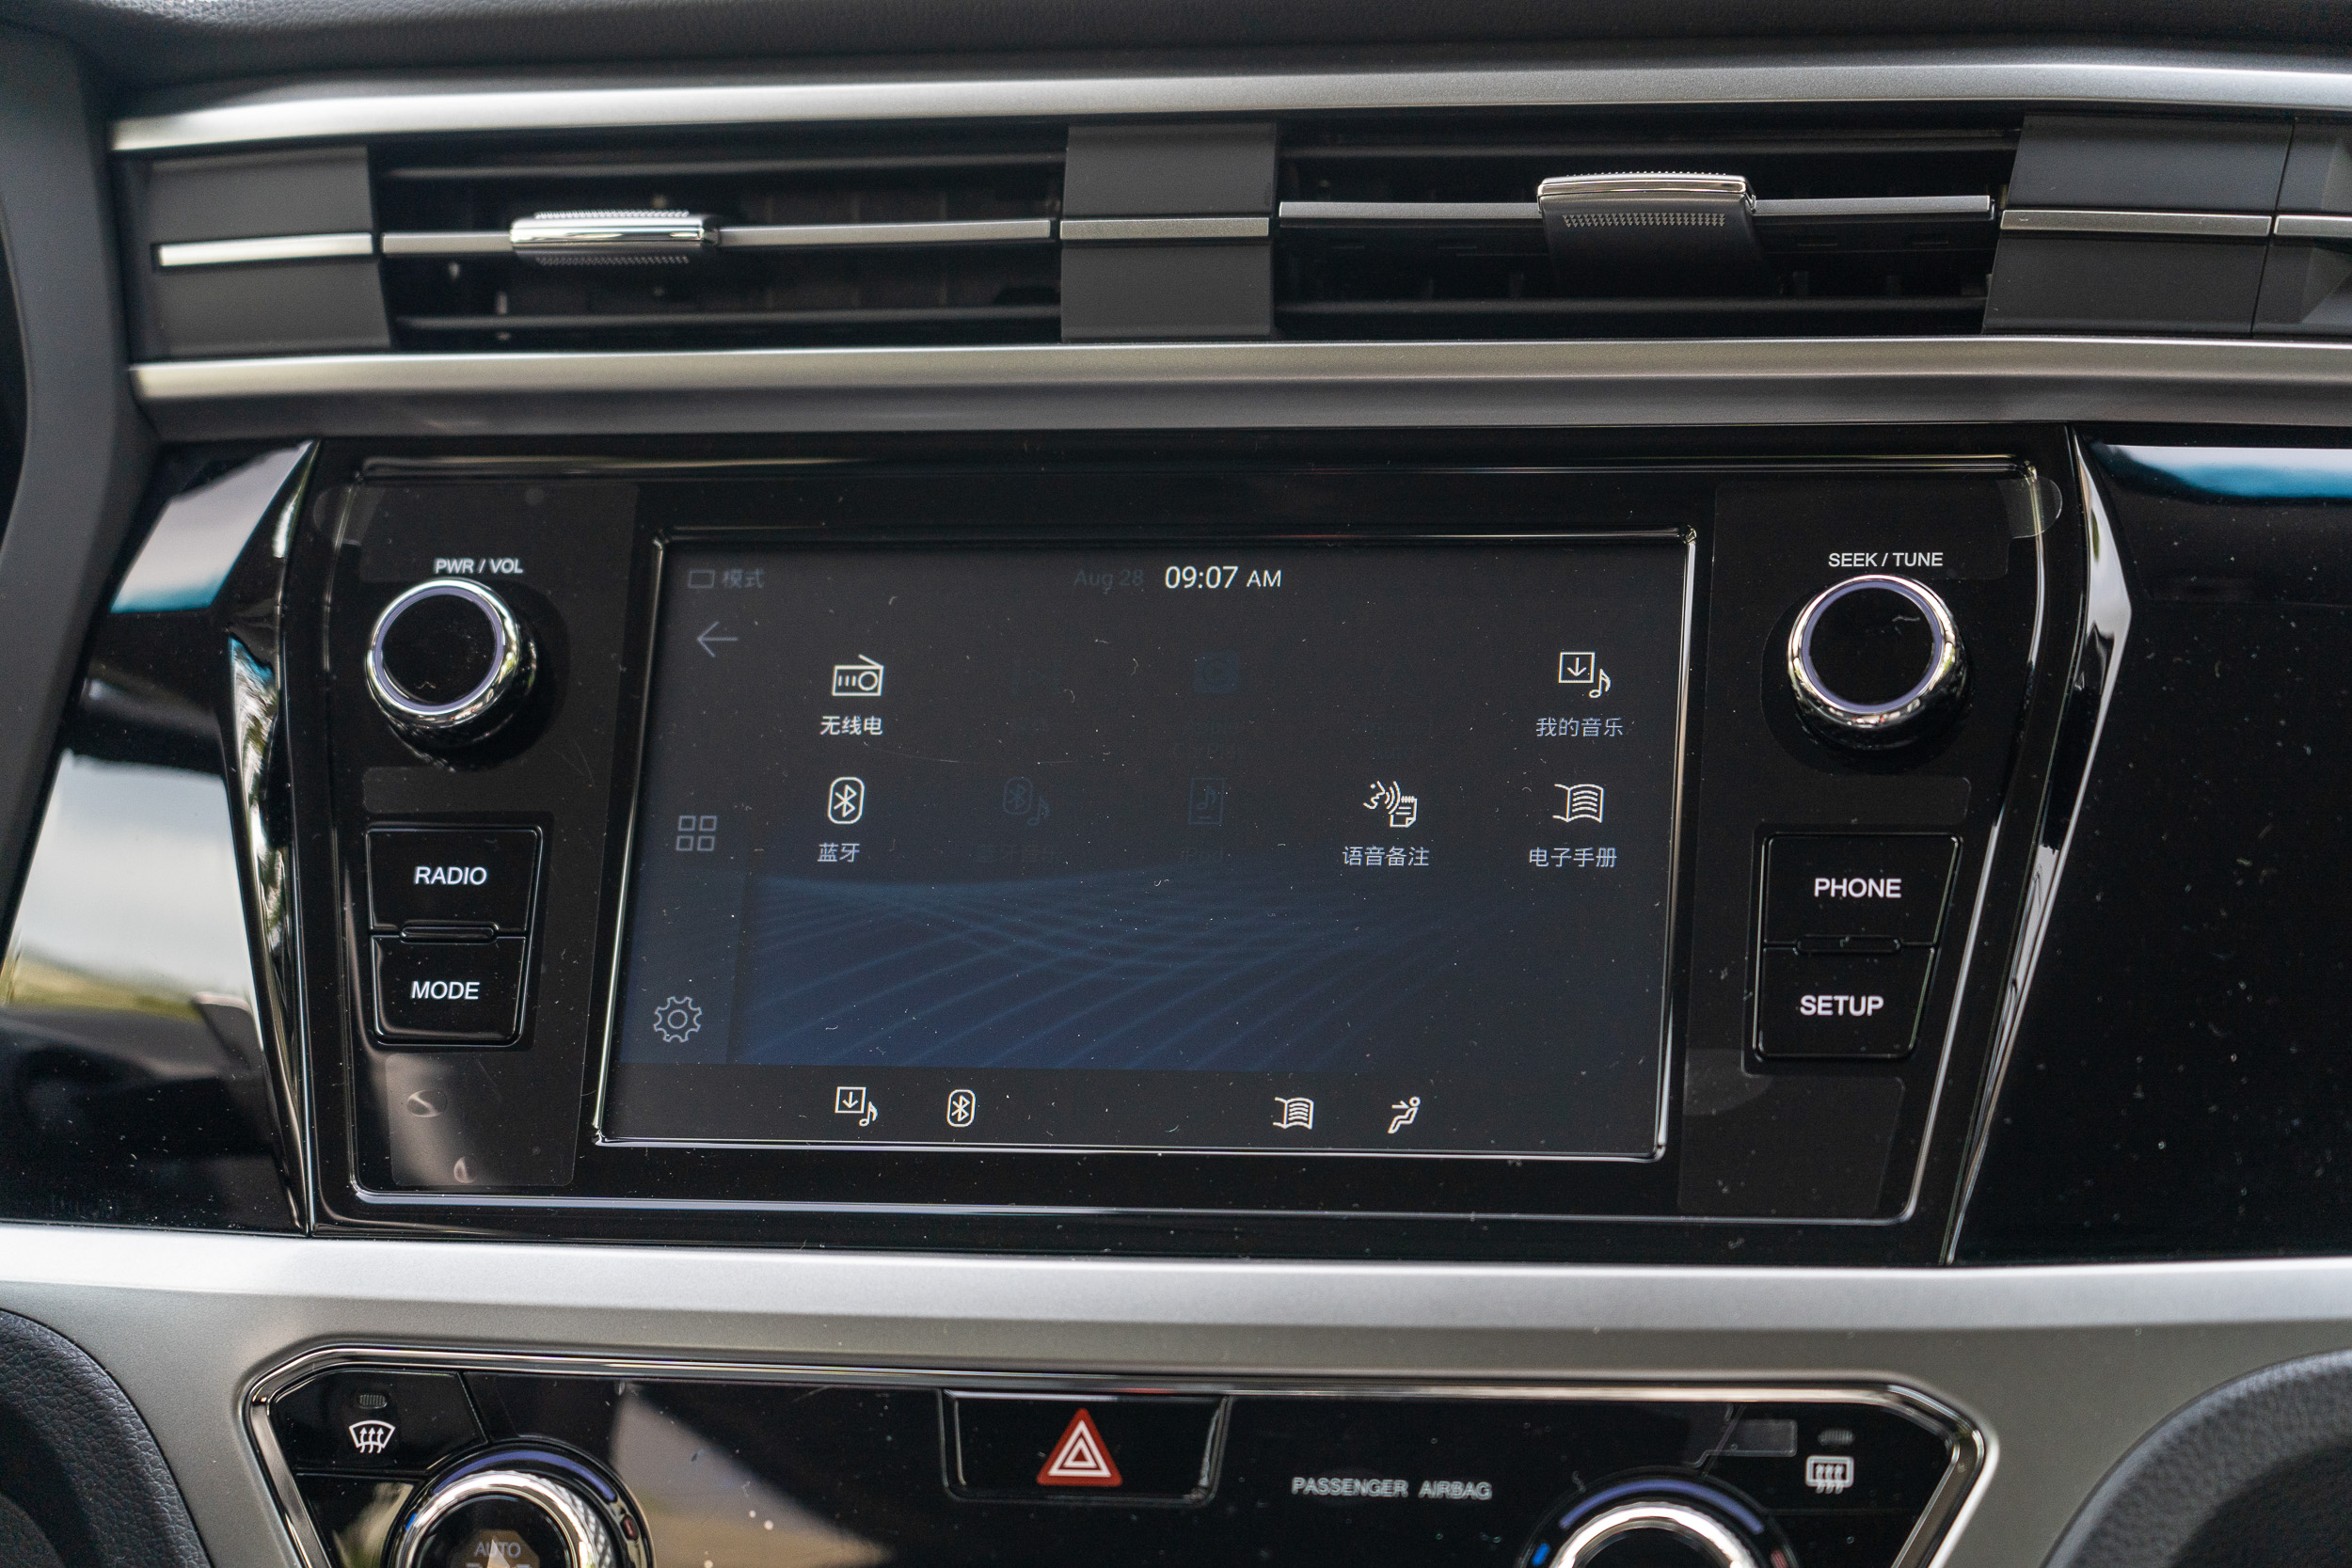 8 吋中控螢幕可供應 Apple CarPlay、Android Auto 智慧型裝置互連功能。